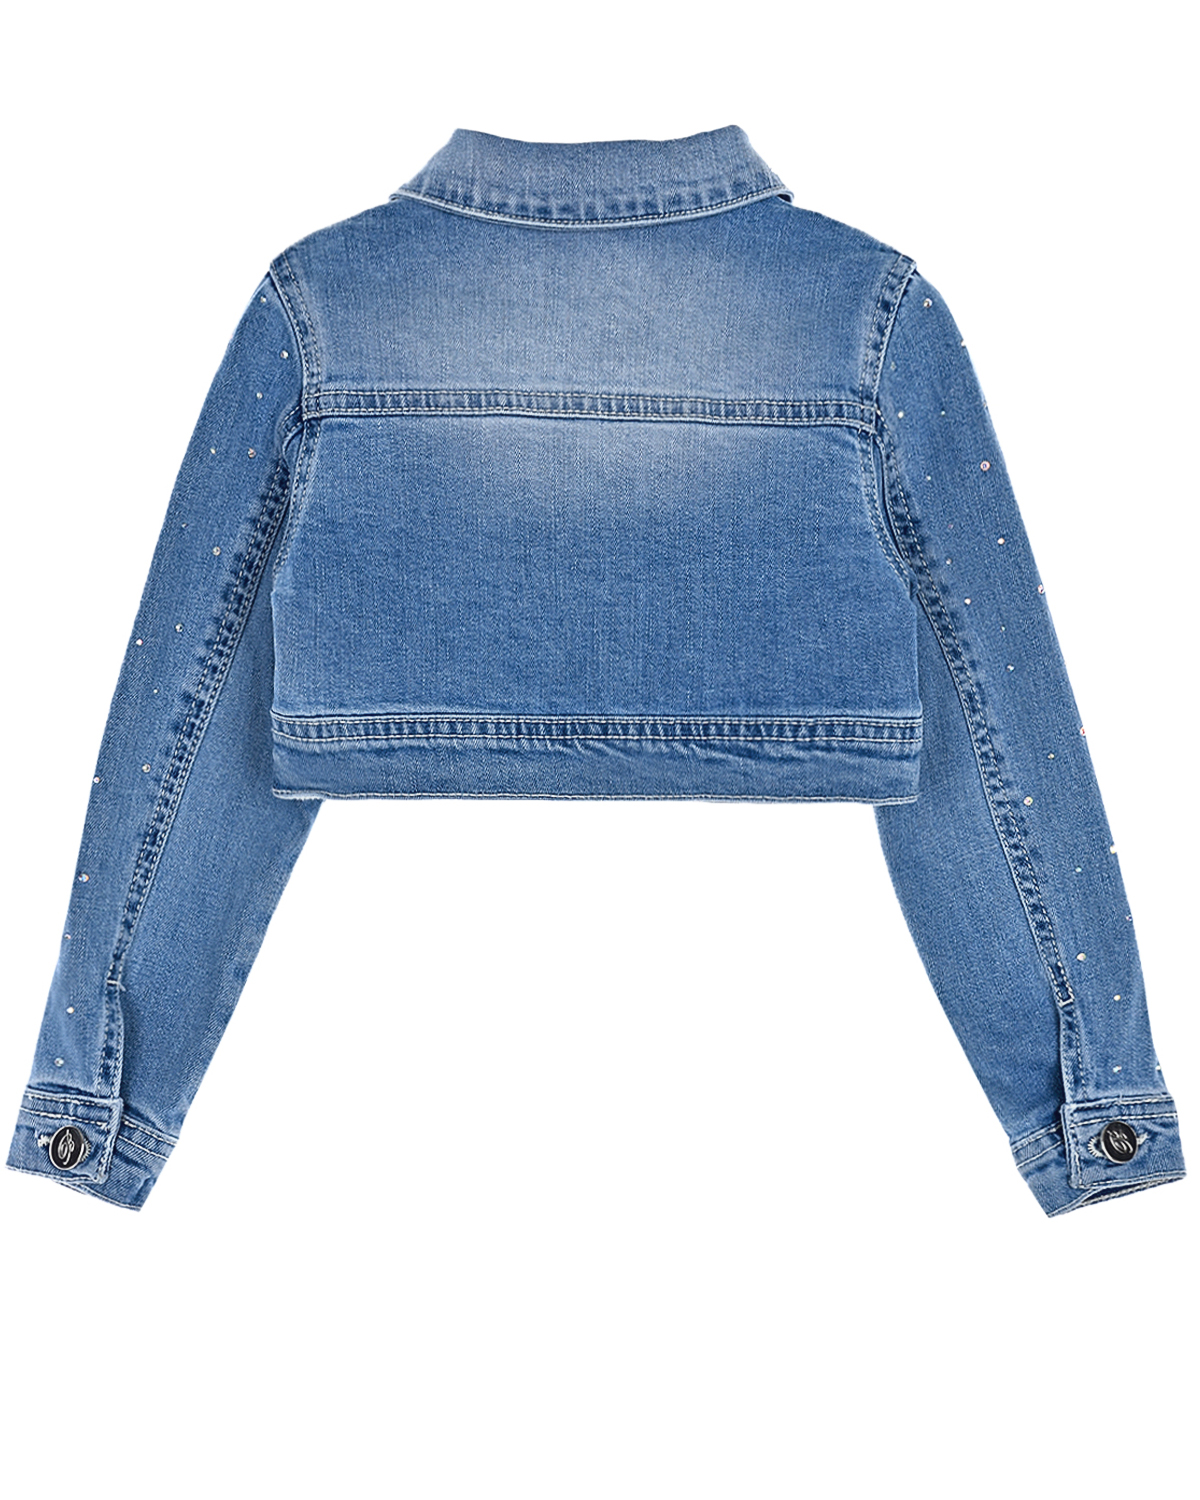 Укороченная джинсовая куртка с бусинами Miss Blumarine детская, размер 92, цвет синий - фото 2